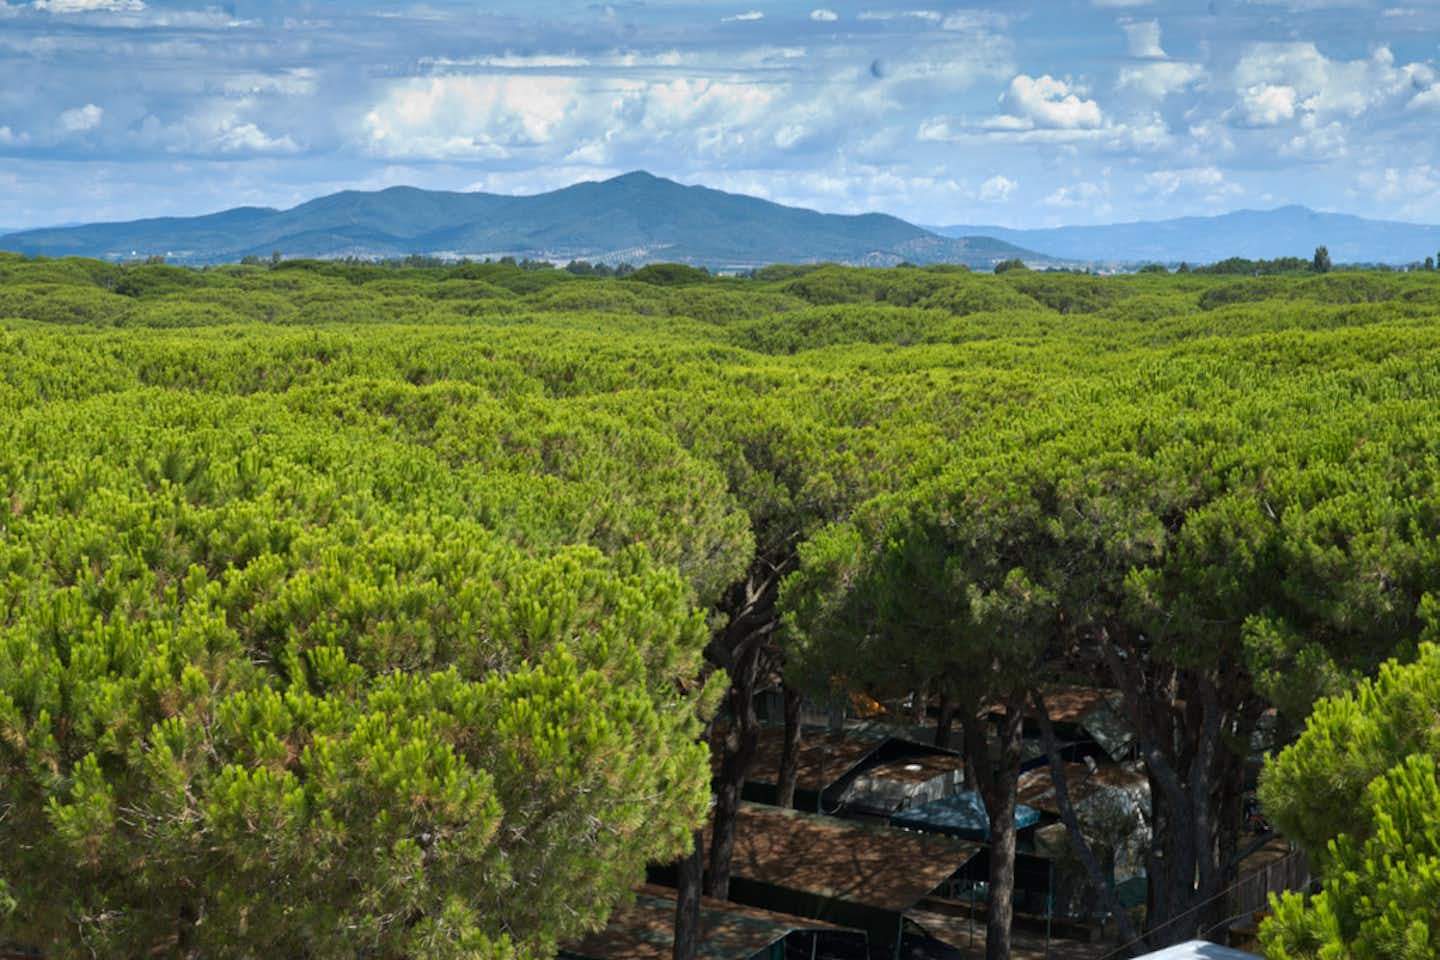 Camping Rosmarina - Campingplatz am Mittelmeer mit Wohnwagen- und Zeltstellplatz unter Bäumen und Blick auf das Meer